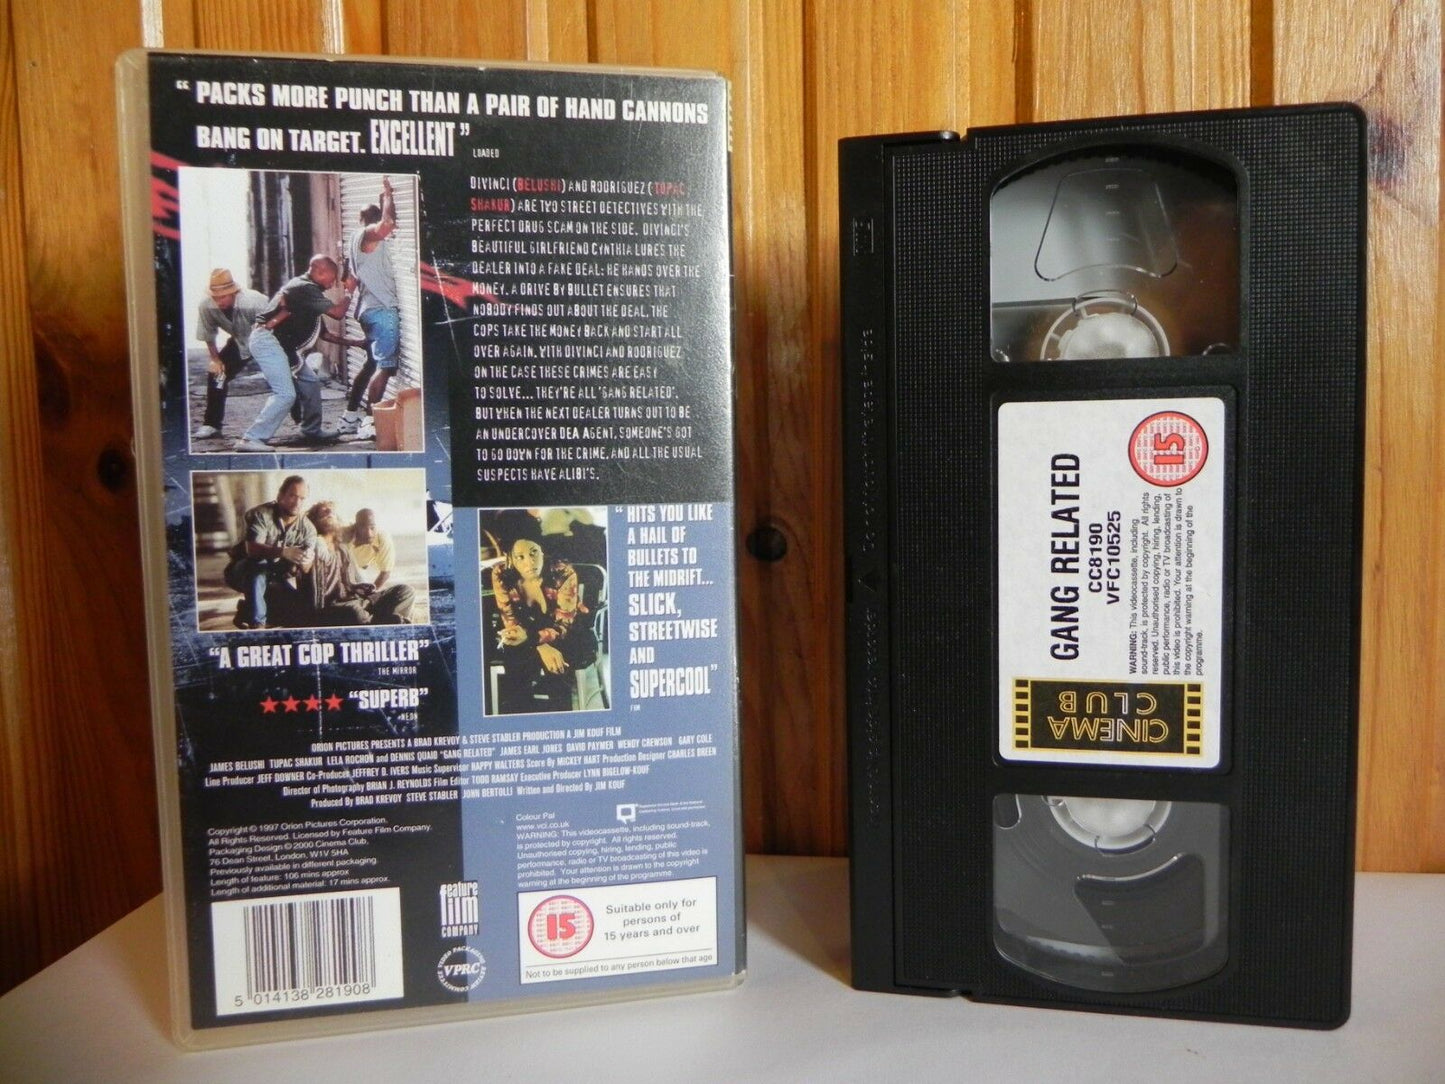 Gang Related - Cinema Club - Thriller - James Belushi - Tupac Shakur - Pal VHS-